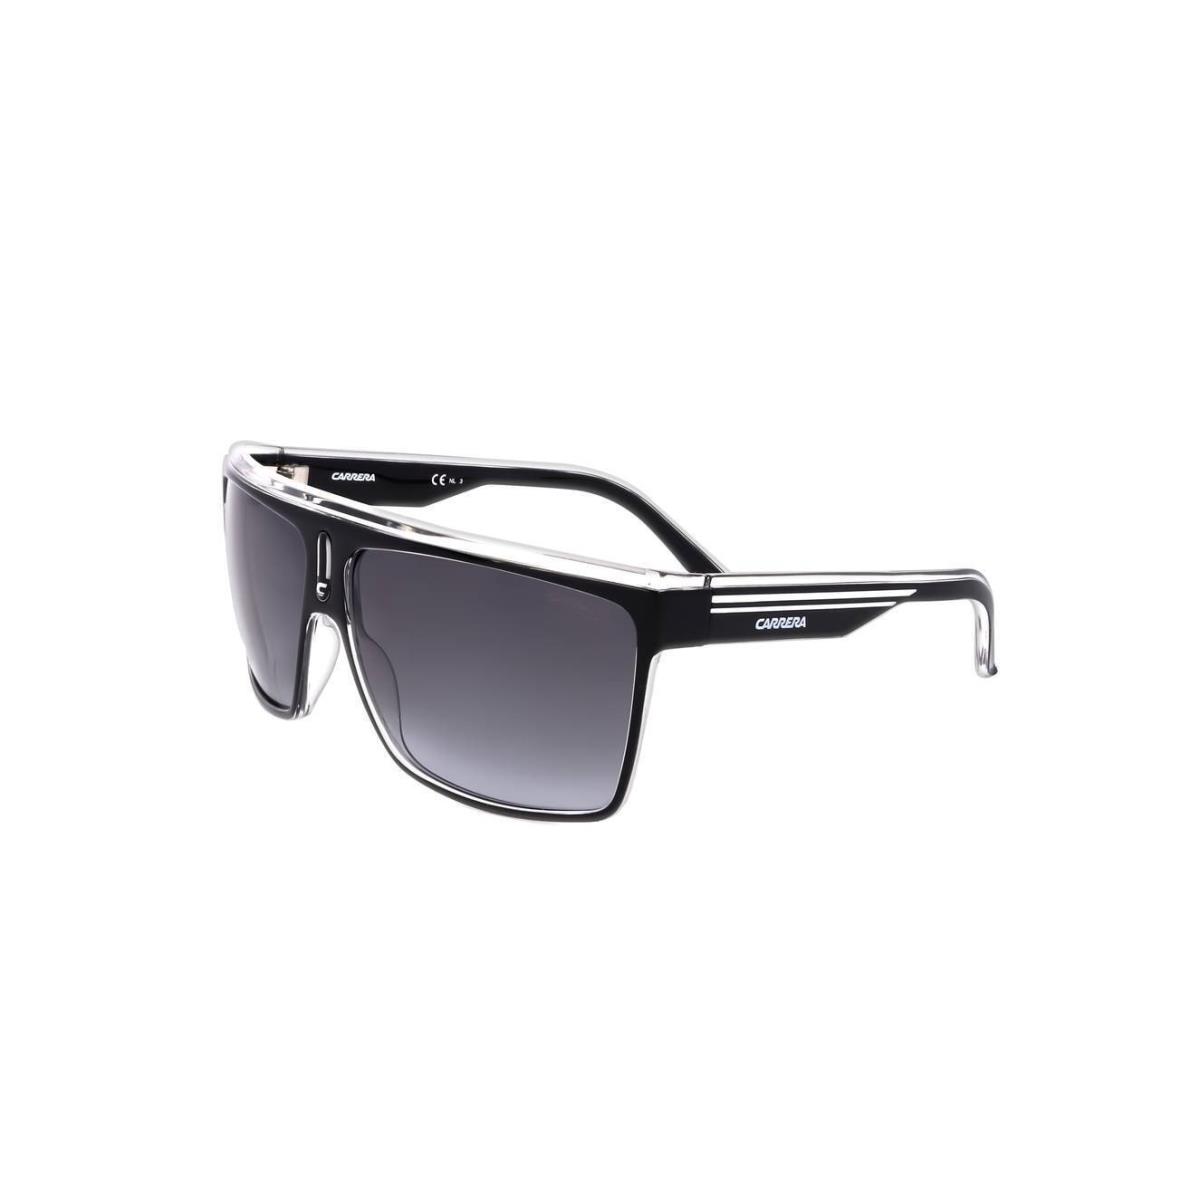 Sunglasses Carrera Carrera 22 Black White Size 63